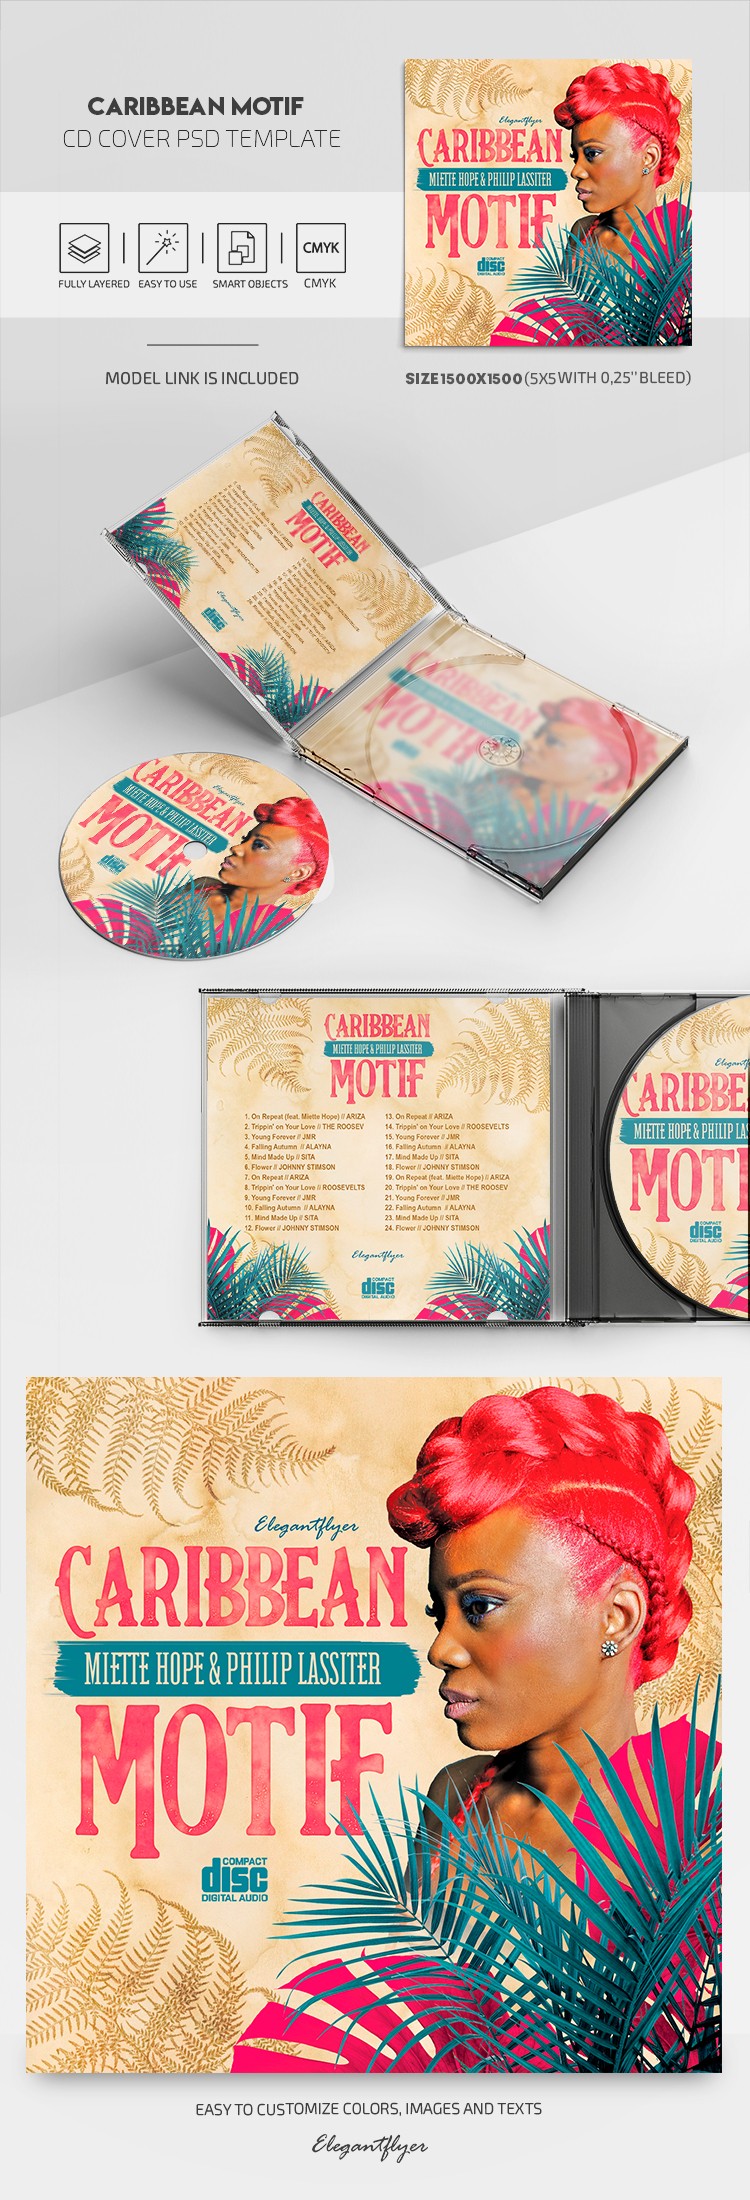 Couverture de CD sur le thème des Caraïbes by ElegantFlyer